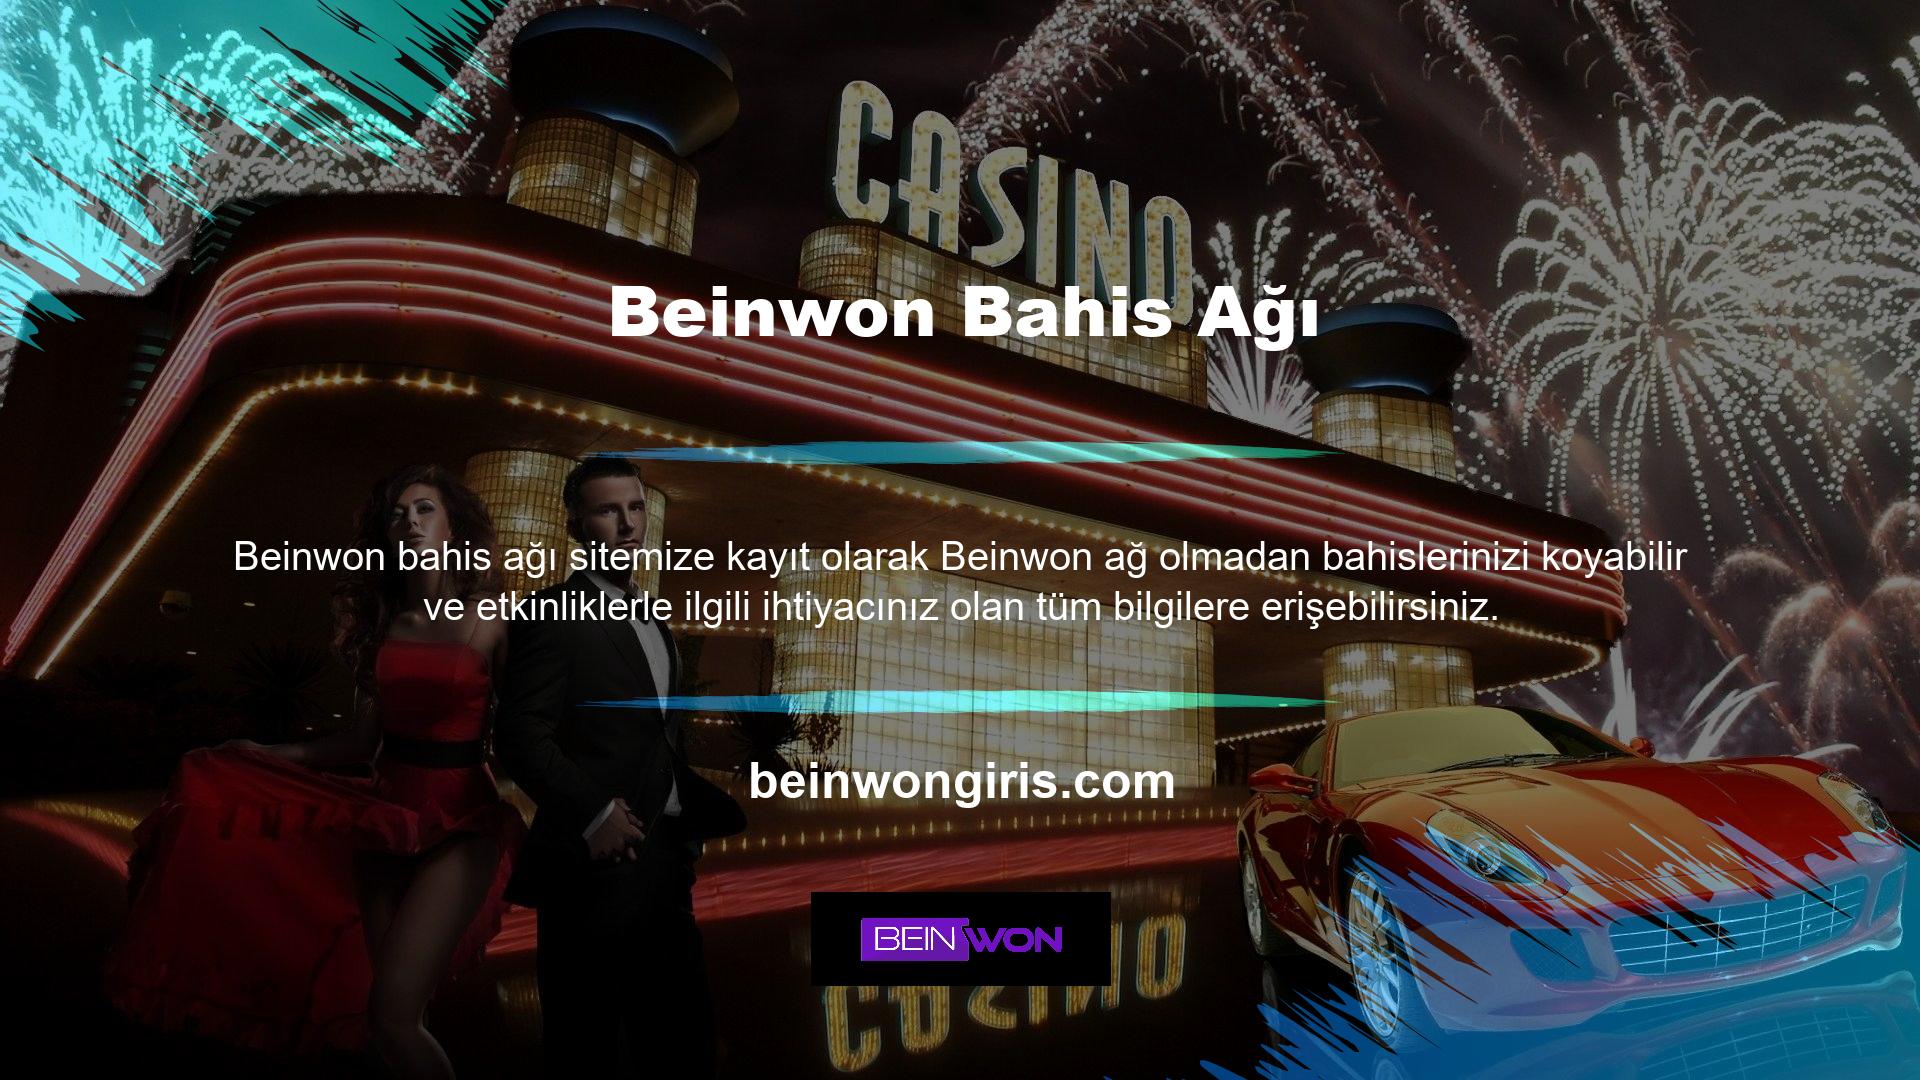 Kayıt olmak için Beinwon web sitesini ziyaret edin ve butonuna tıklayın